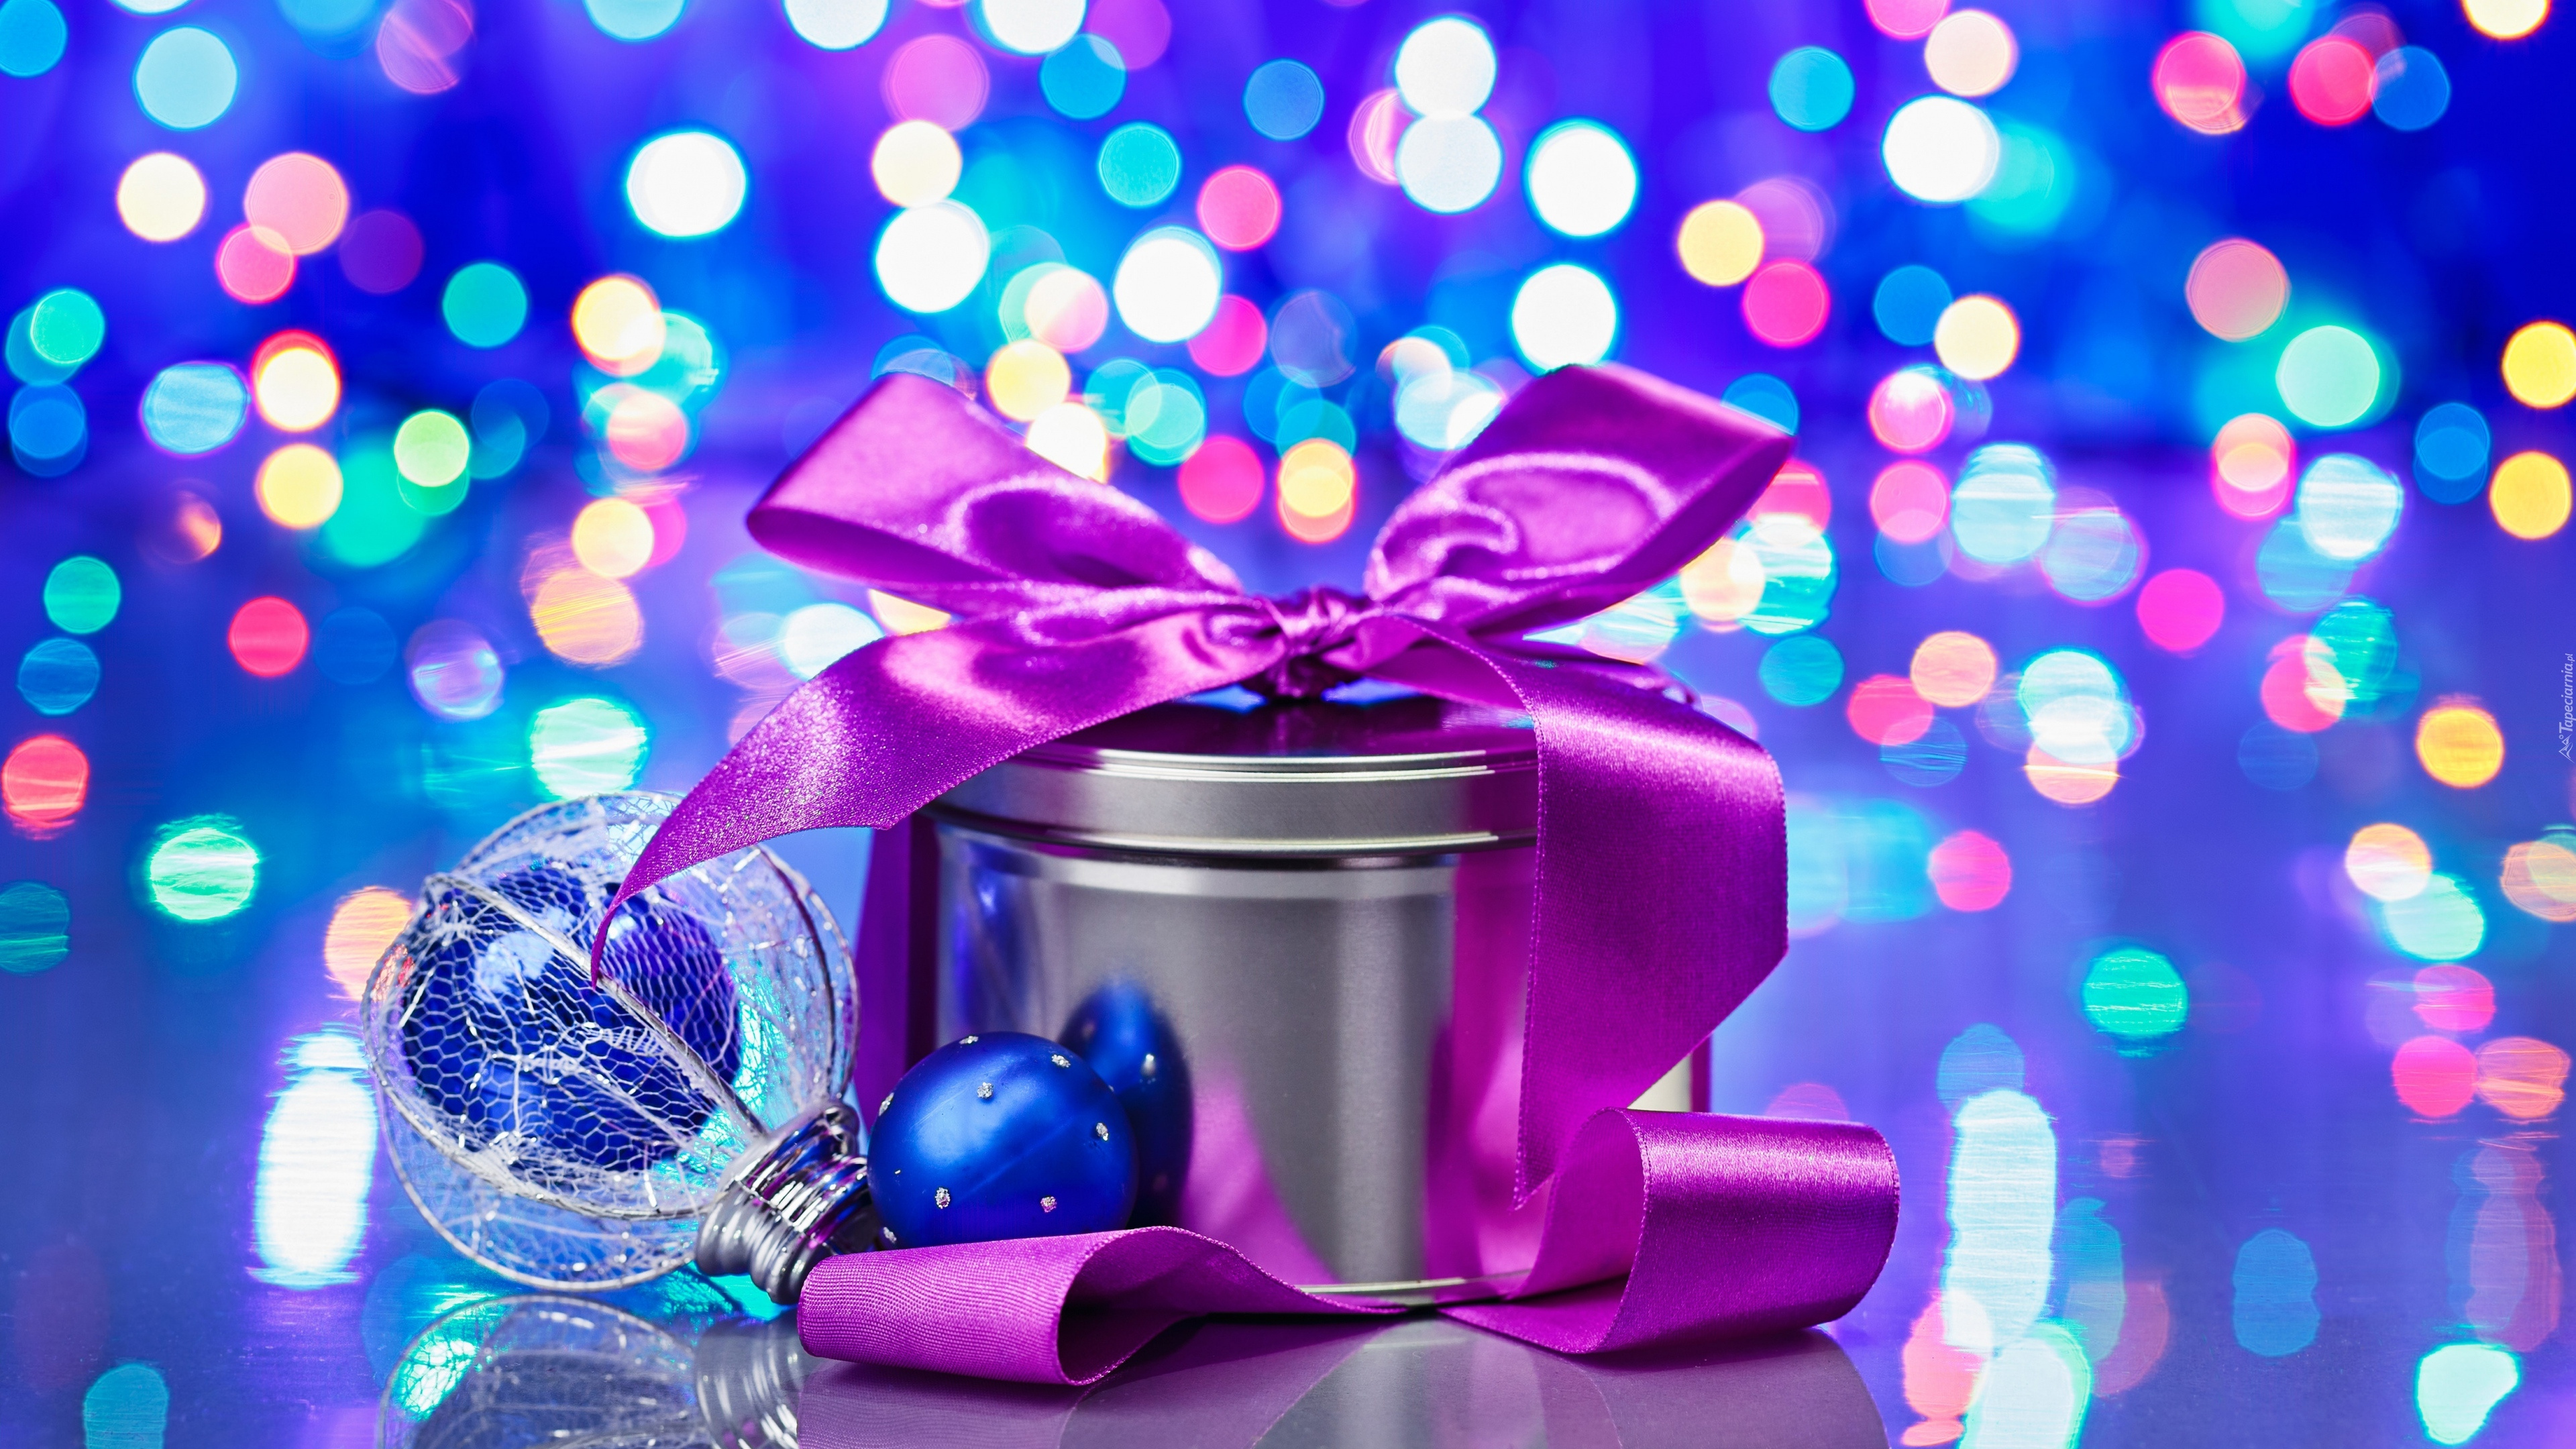 圣诞节那天, 新的一年, 紫色的, 紫罗兰色, 粉红色 壁纸 3840x2160 允许